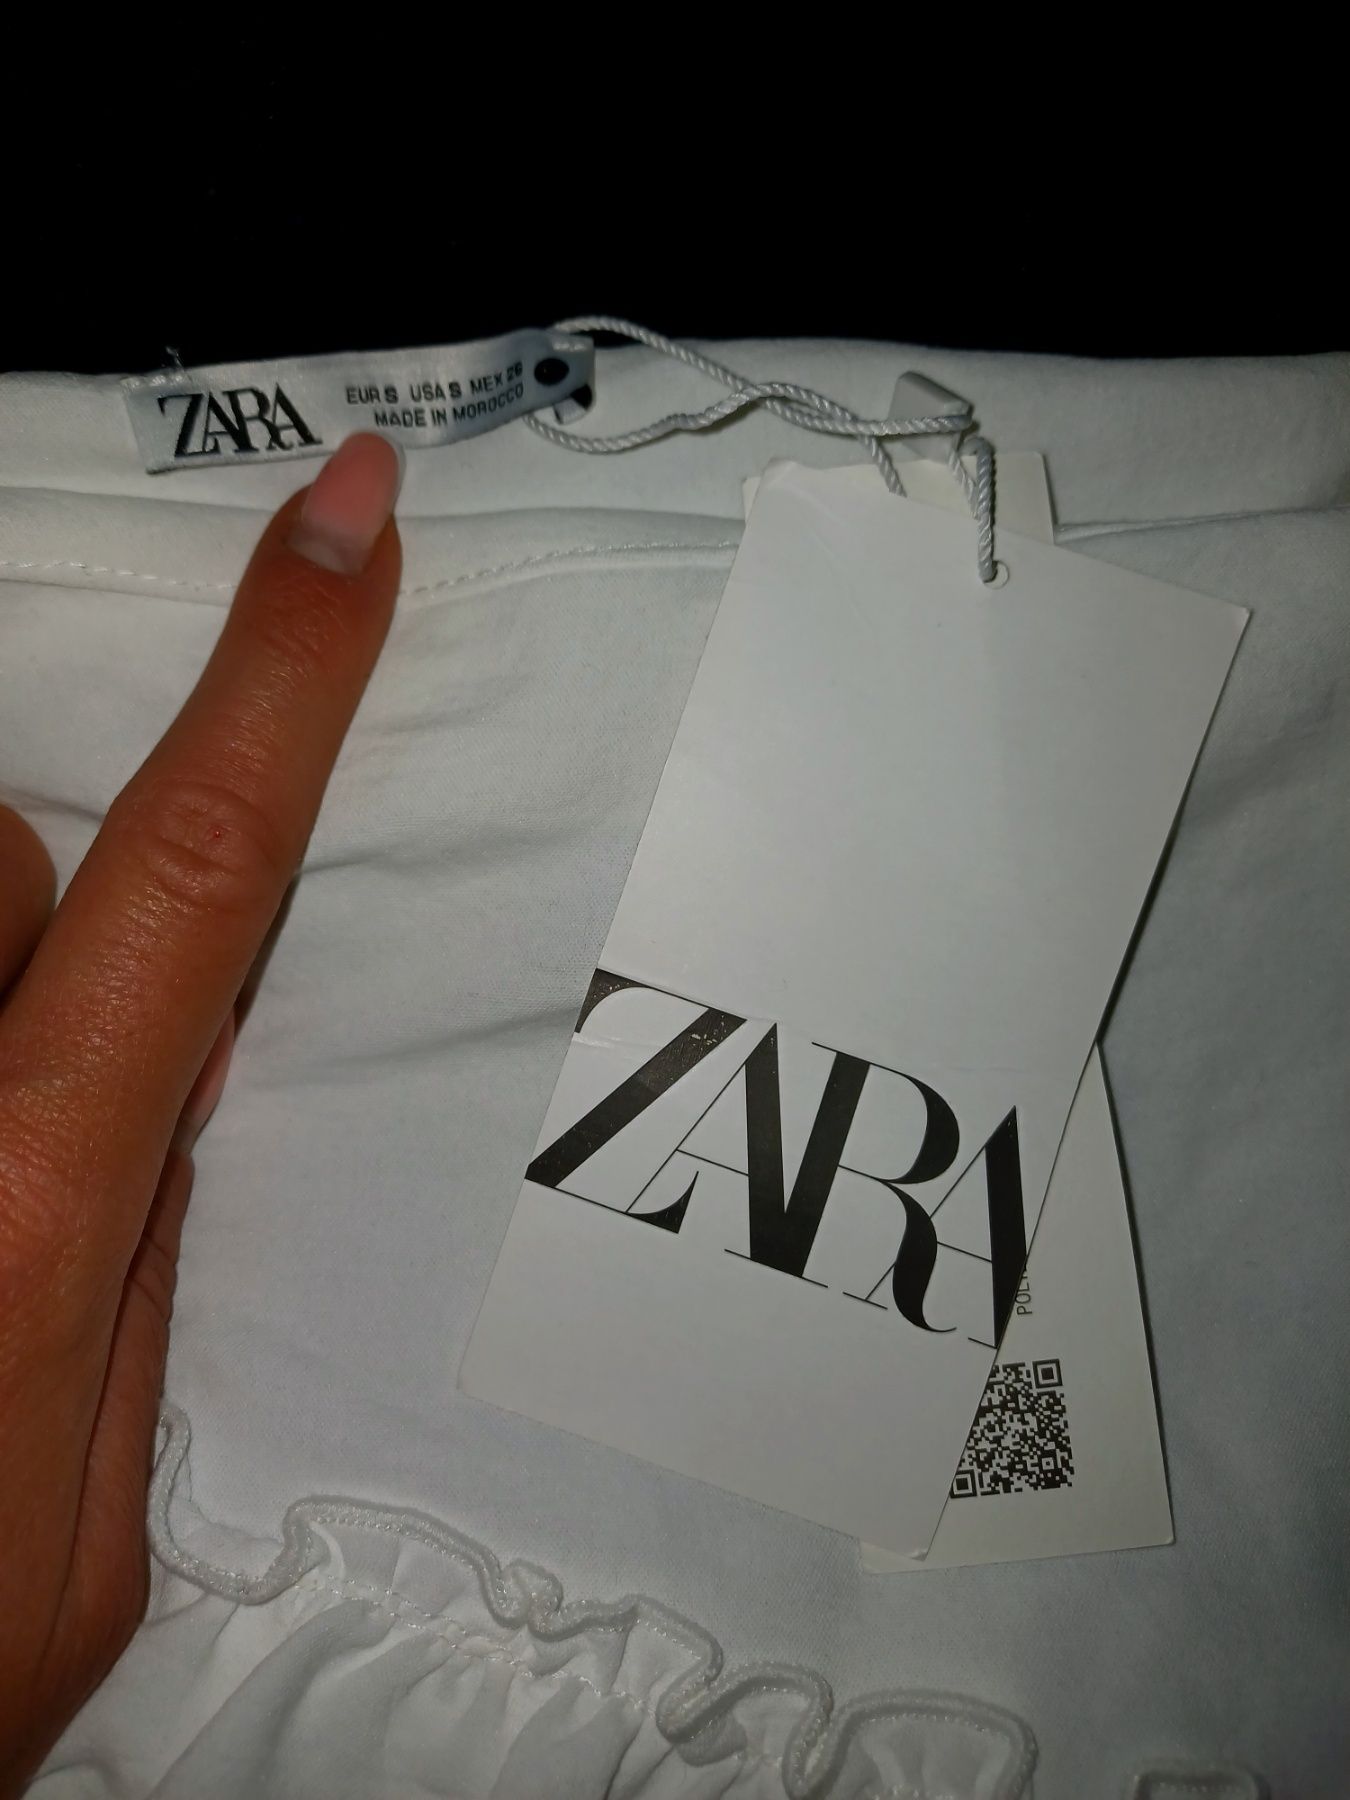 Zara белая трендовая юбка